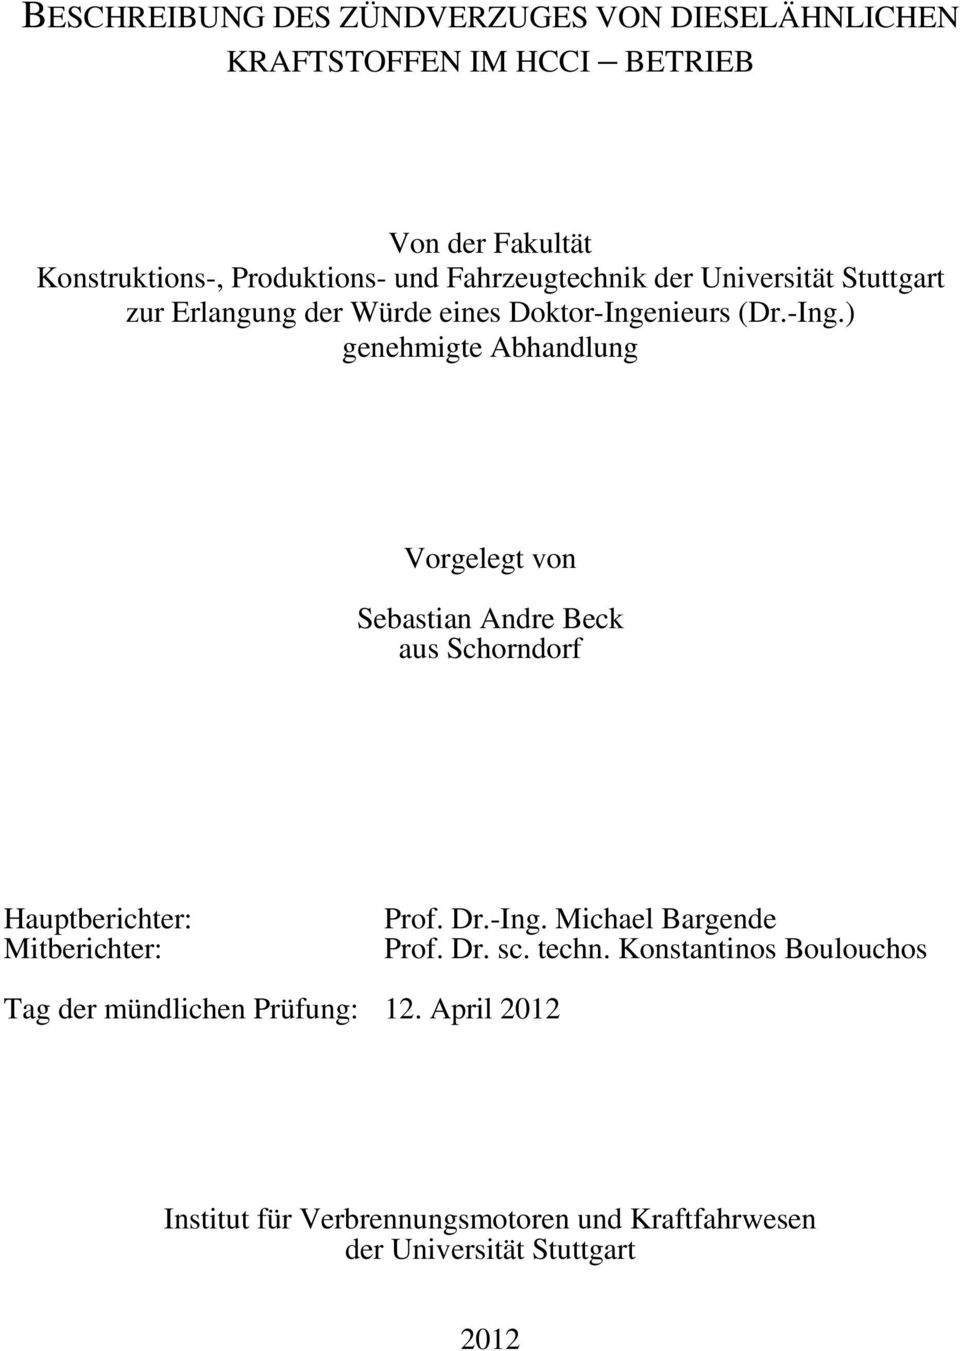 nieurs (Dr.-Ing.) genehmigte Abhandlung Vorgelegt von Sebastian Andre Beck aus Schorndorf Hauptberichter: Mitberichter: Prof. Dr.-Ing. Michael Bargende Prof.